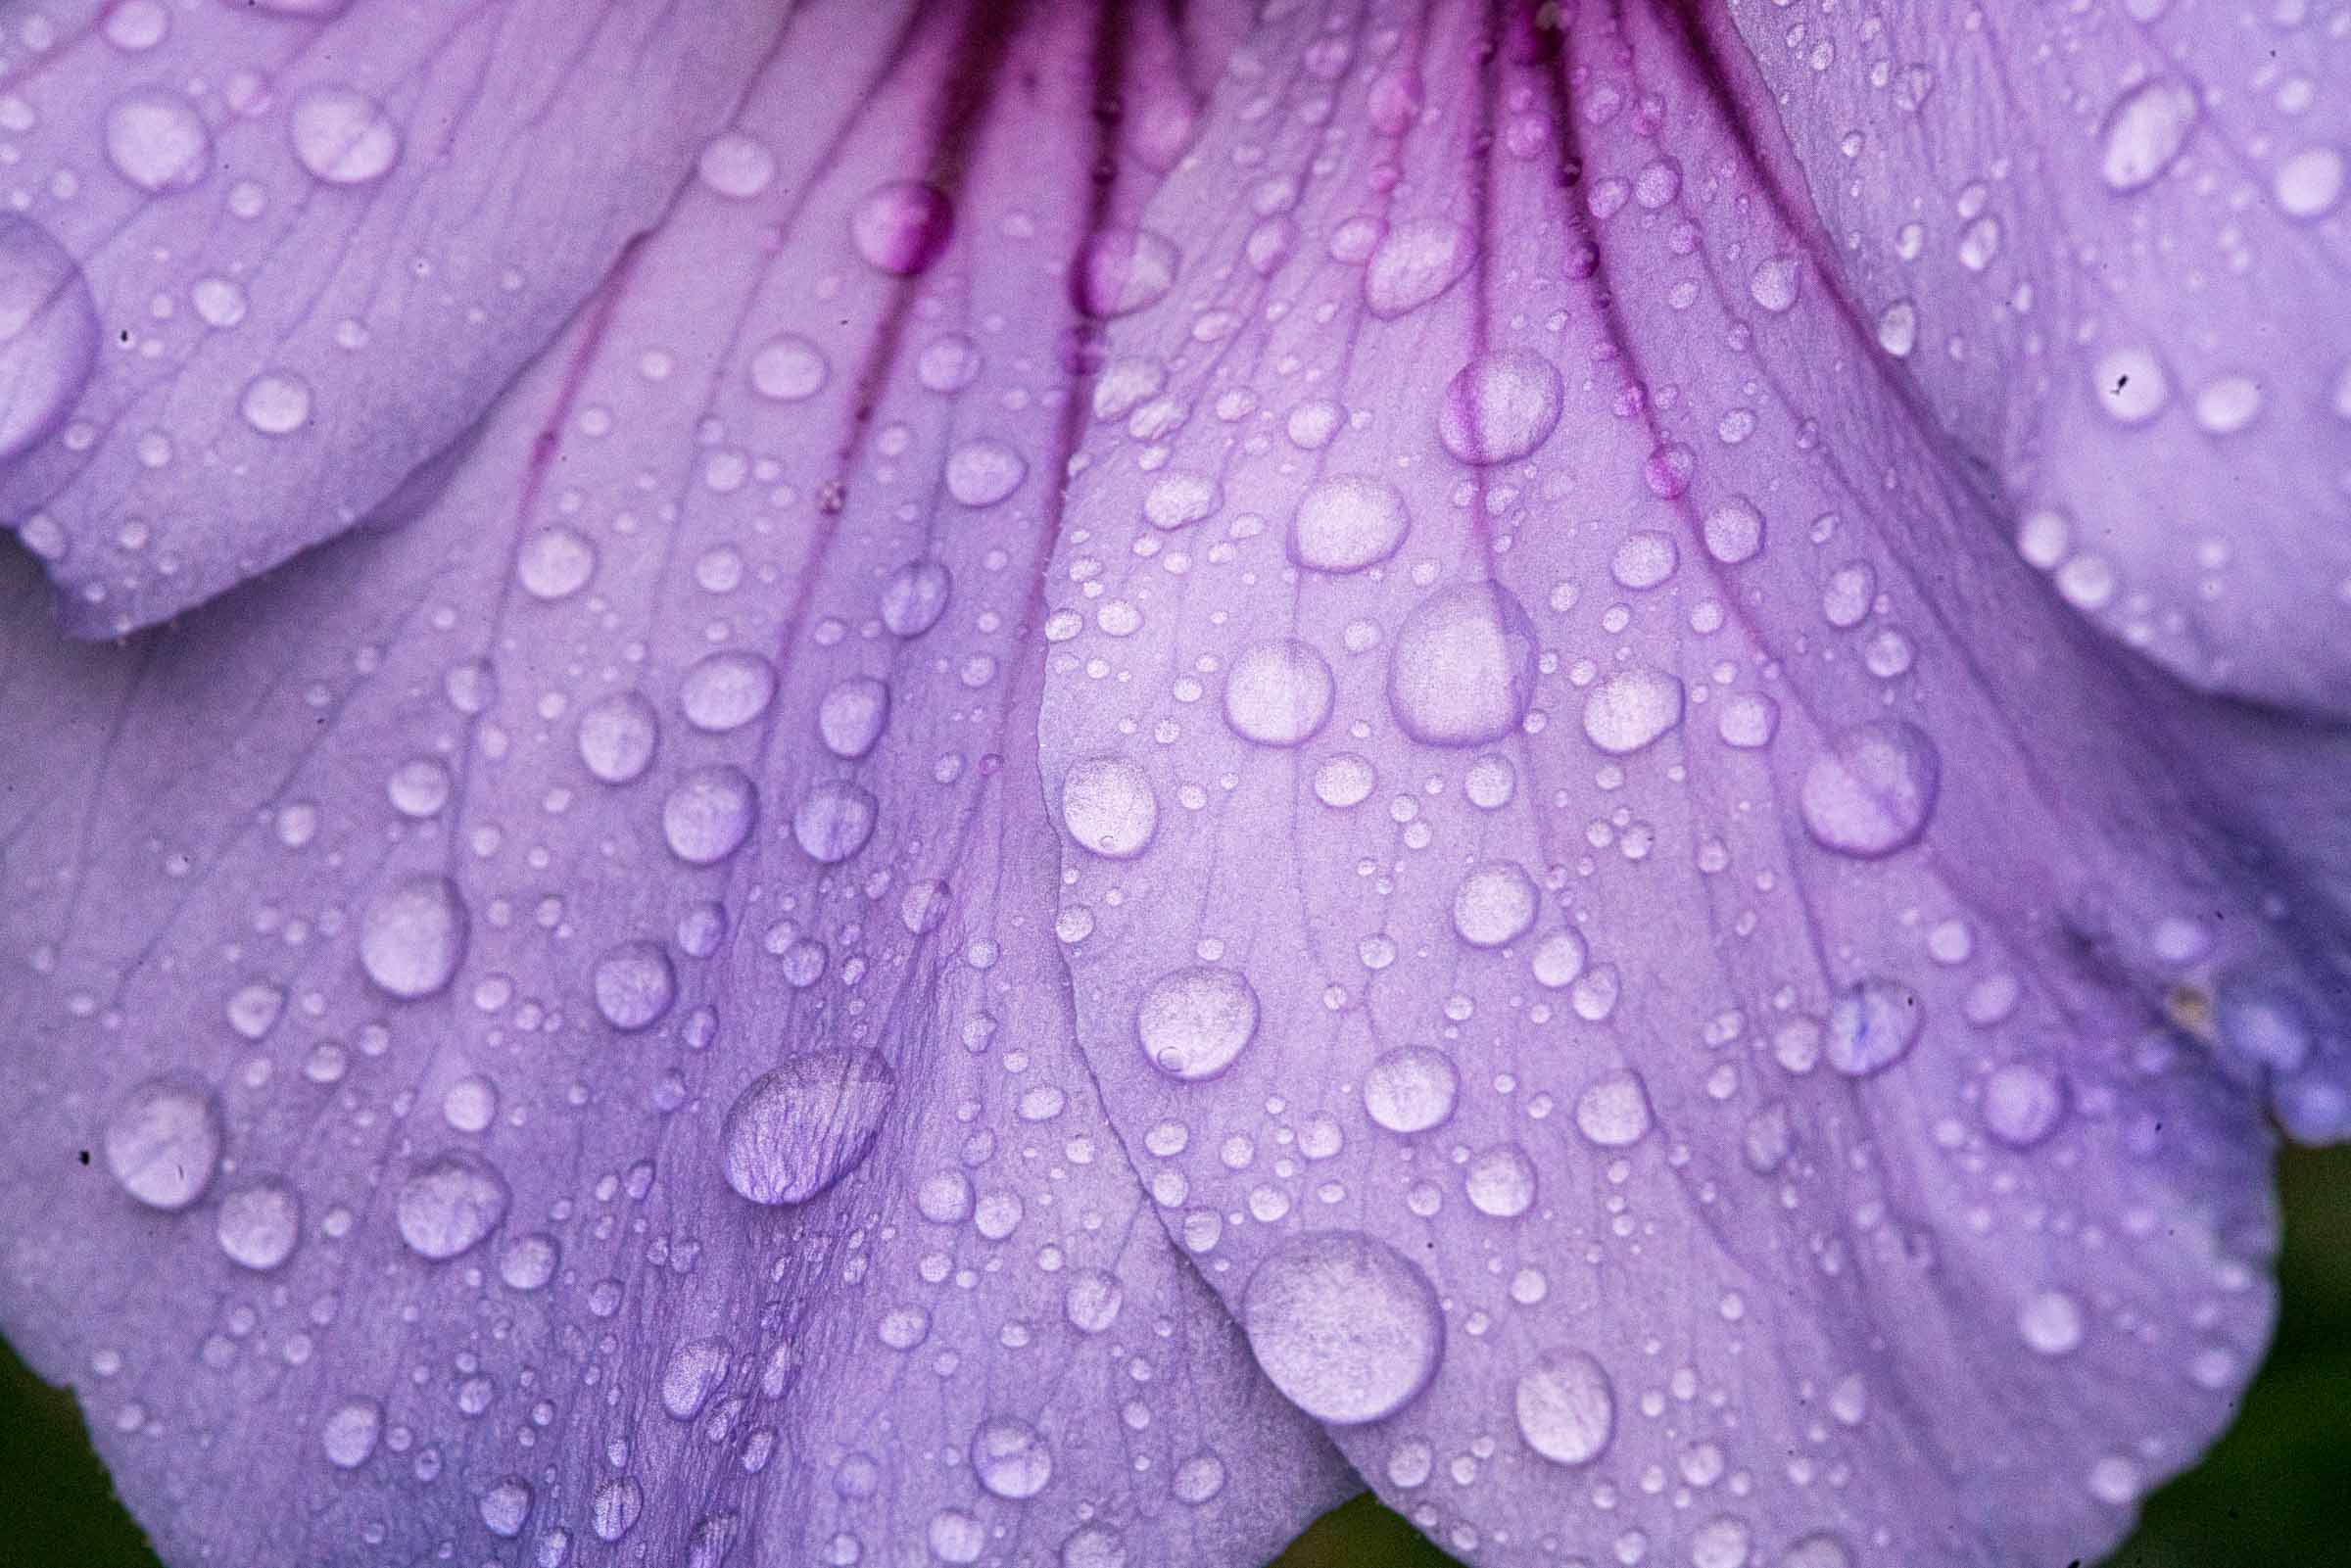 Naturkosmetik Regentropfen auf Blumen Fotografie